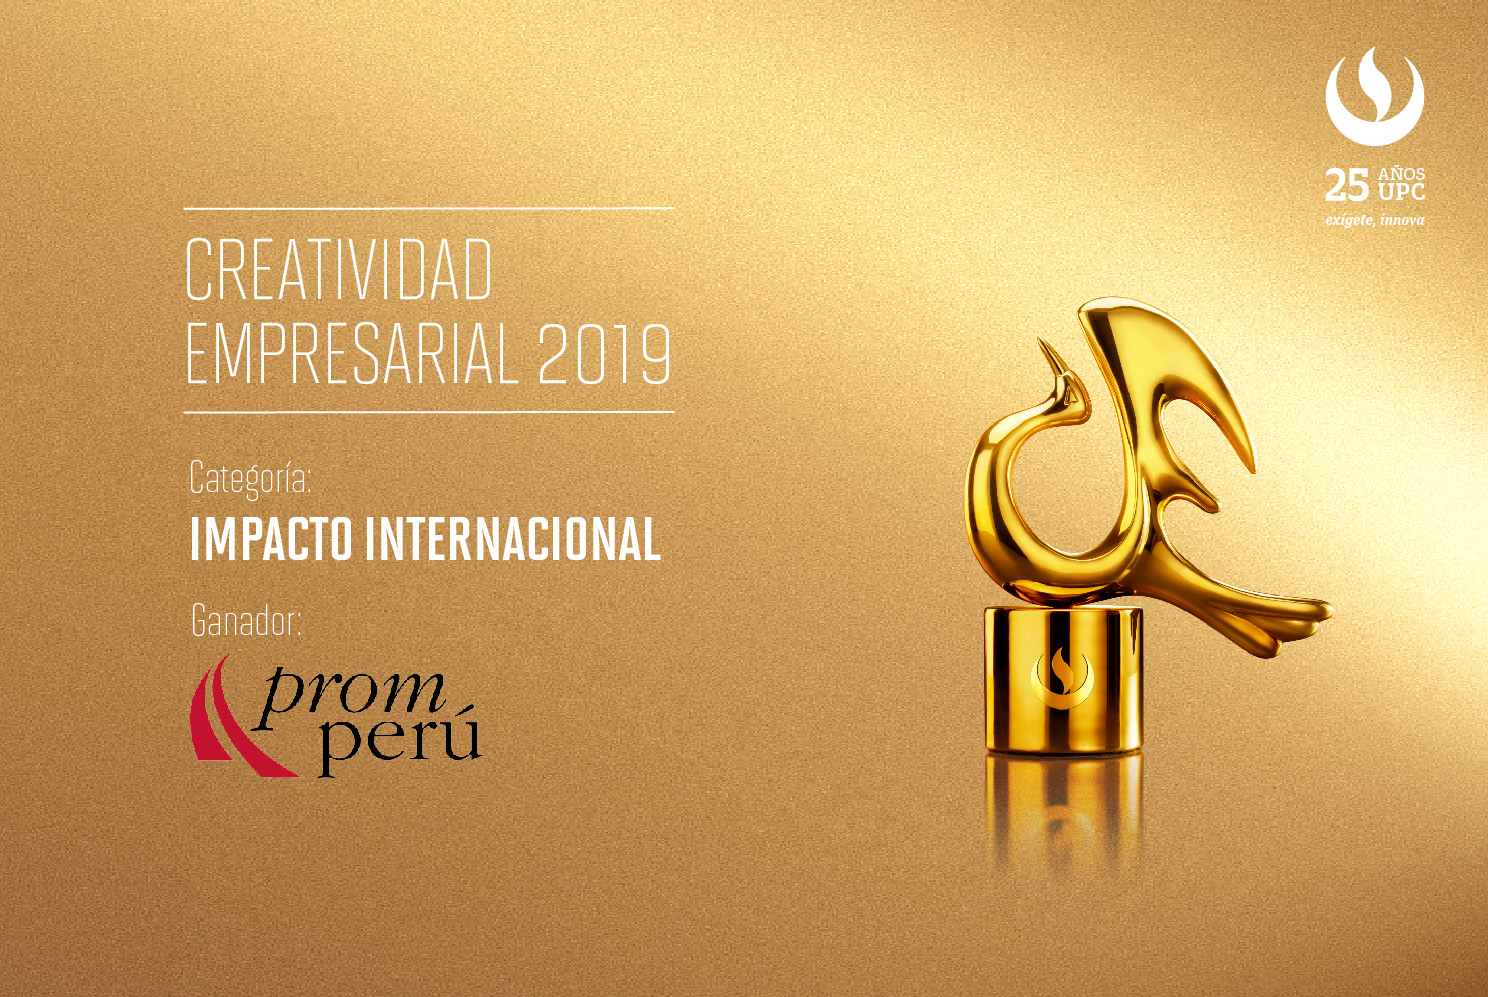 Creatividad Empresarial 2019: PROMPERU ocupó el primer lugar en la categoría Impacto Internacional